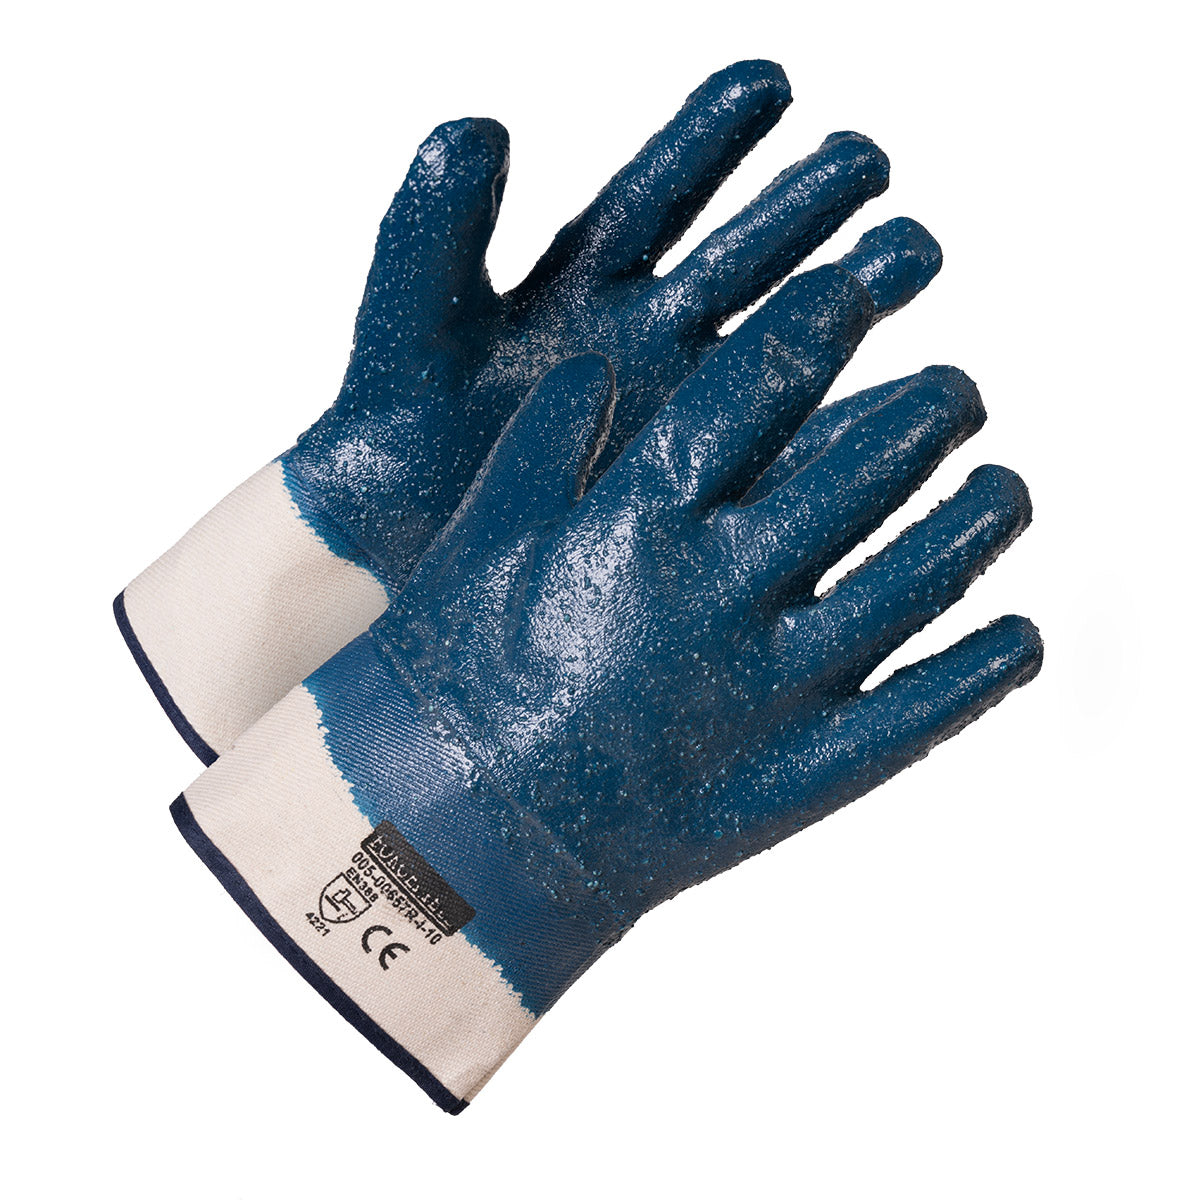 Gants de travail en nitrile bleu à revêtement entièrement rugueux, support en coton, manchette de sécurité